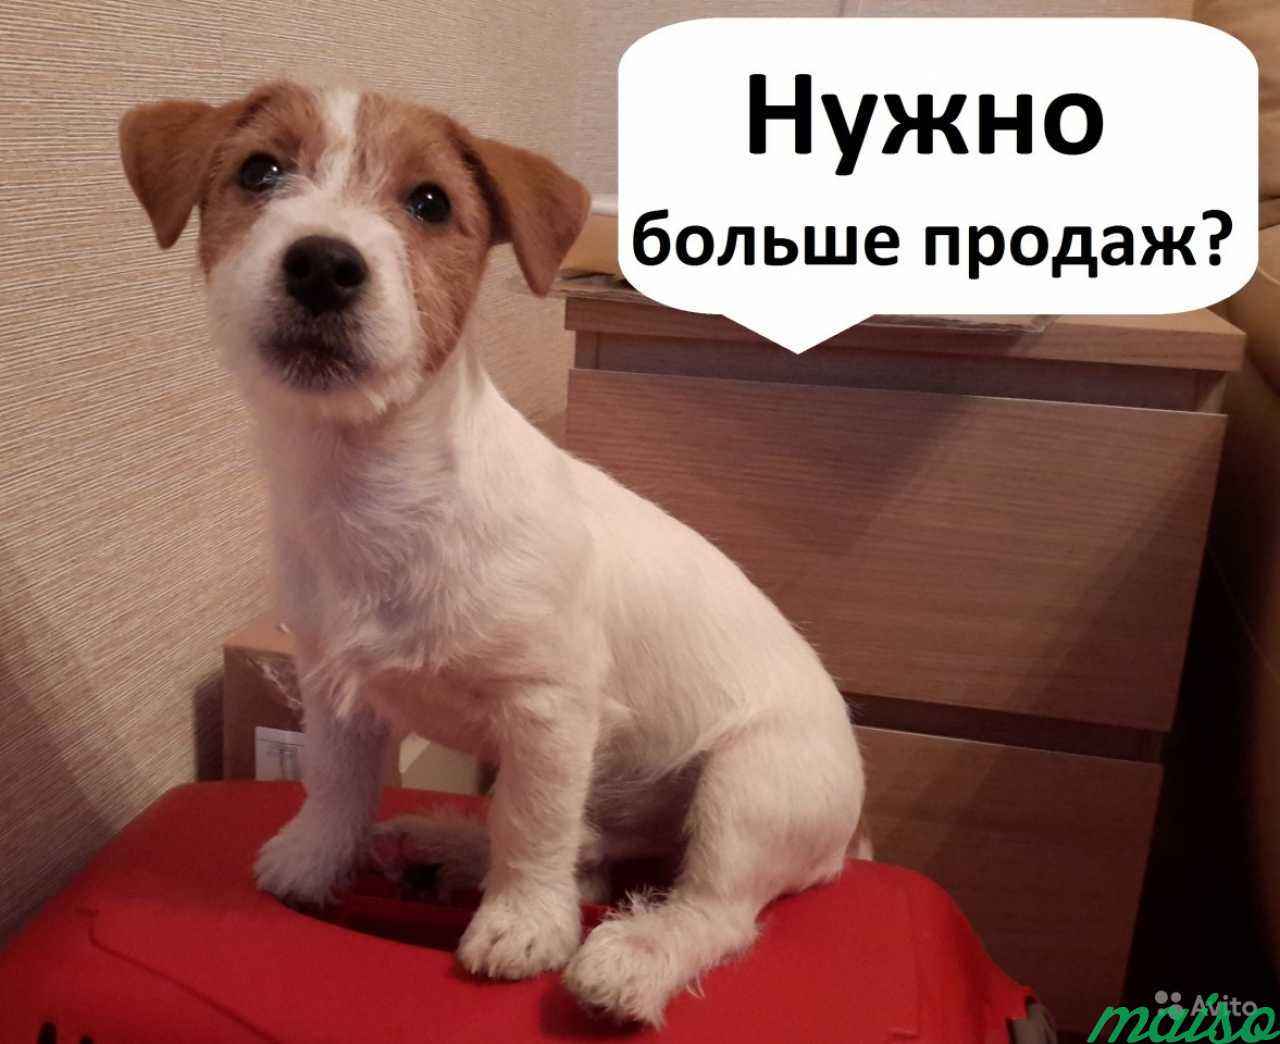 Не делаю рекламу ради рекламы. Яндекс Директ в Санкт-Петербурге. Фото 1